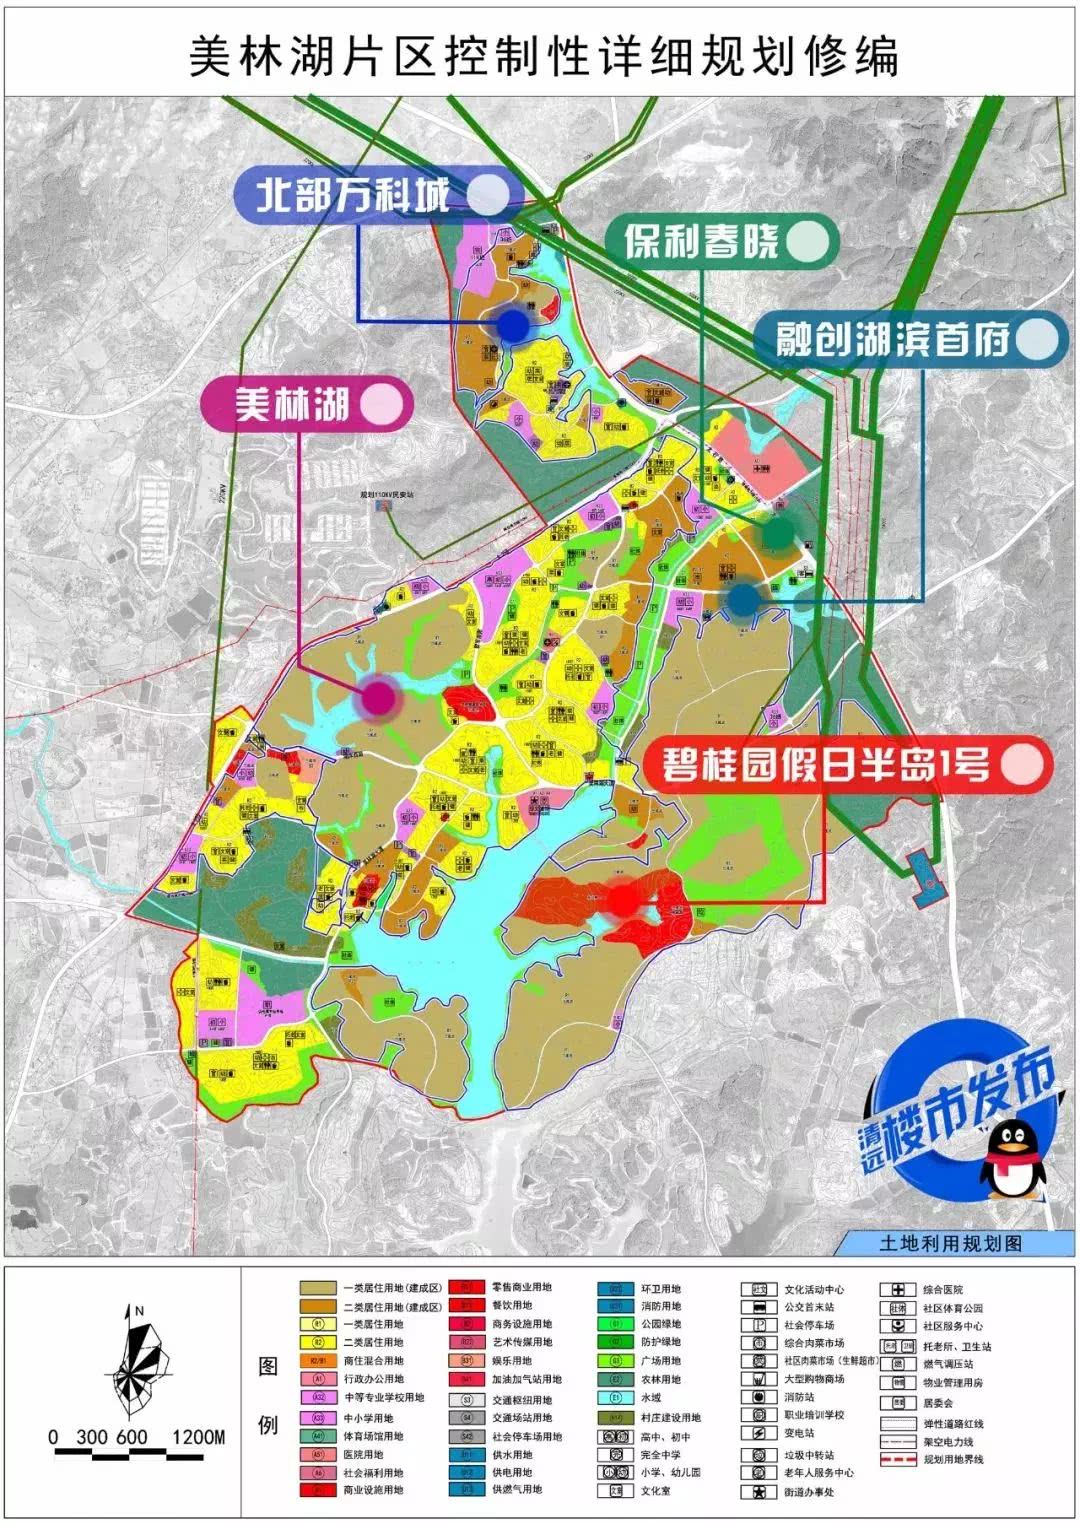 近年来,在广清城轨,清远长隆,广清产业园,磁浮旅游专线等重大项目